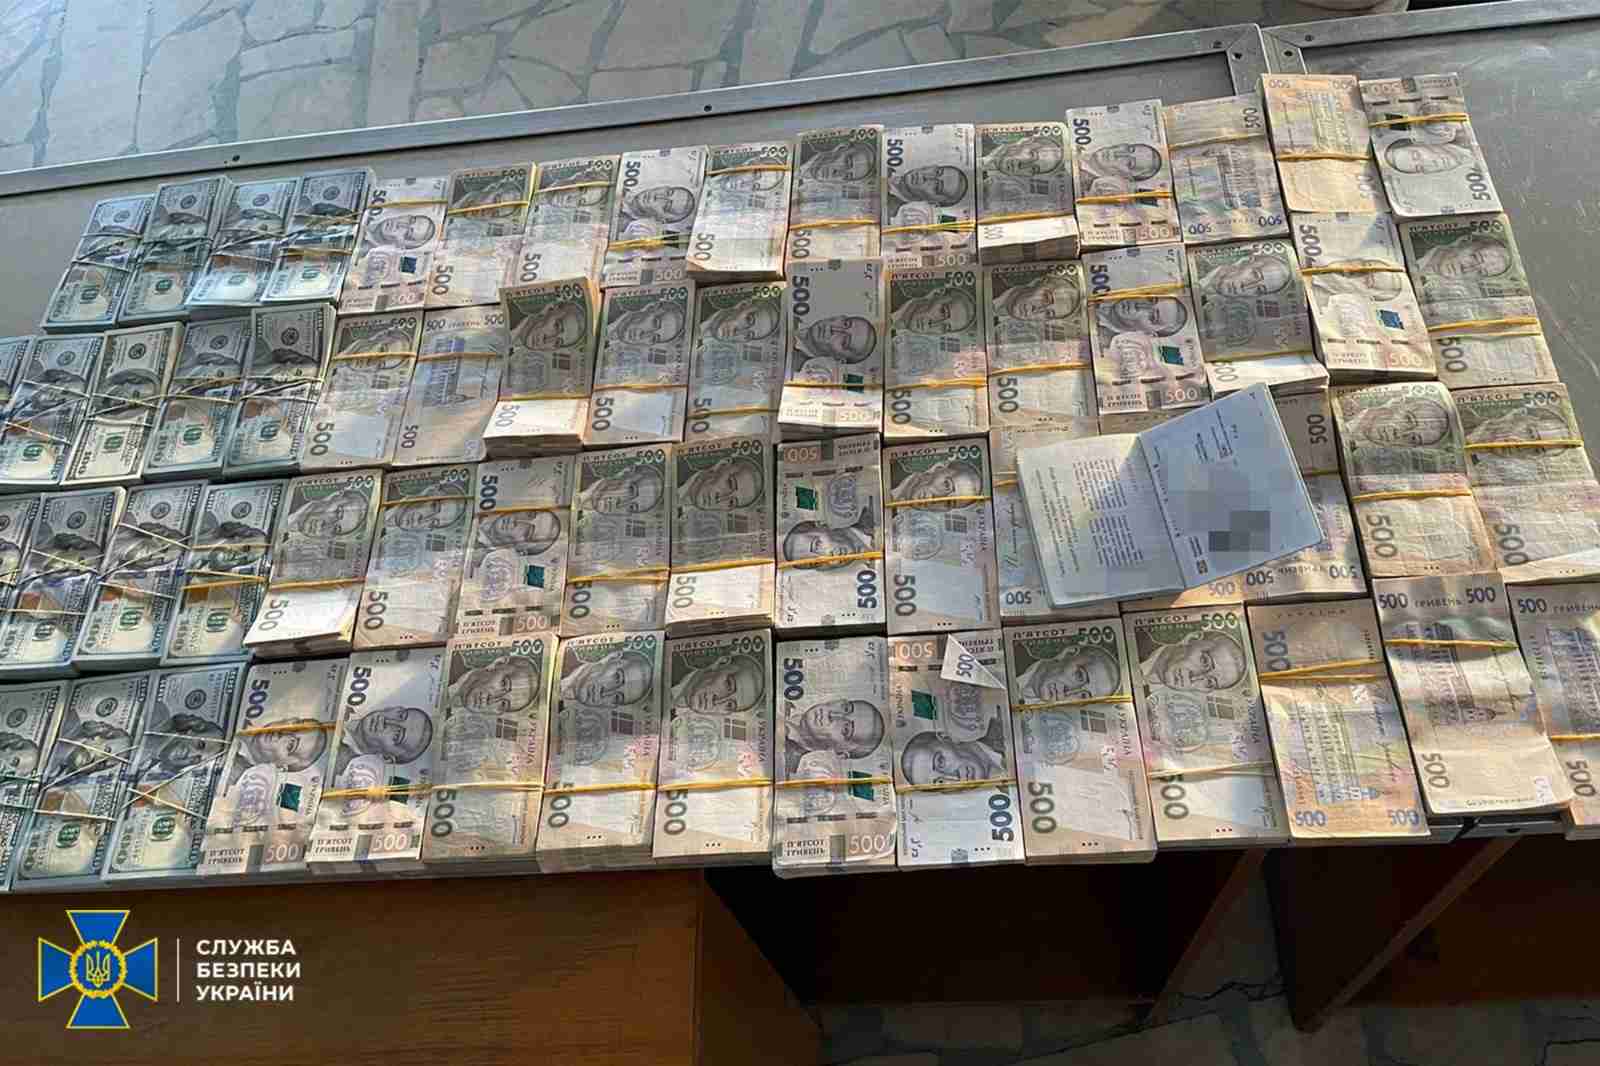 Ділки намагалися завезти до України мільйони гривень для російської агентури